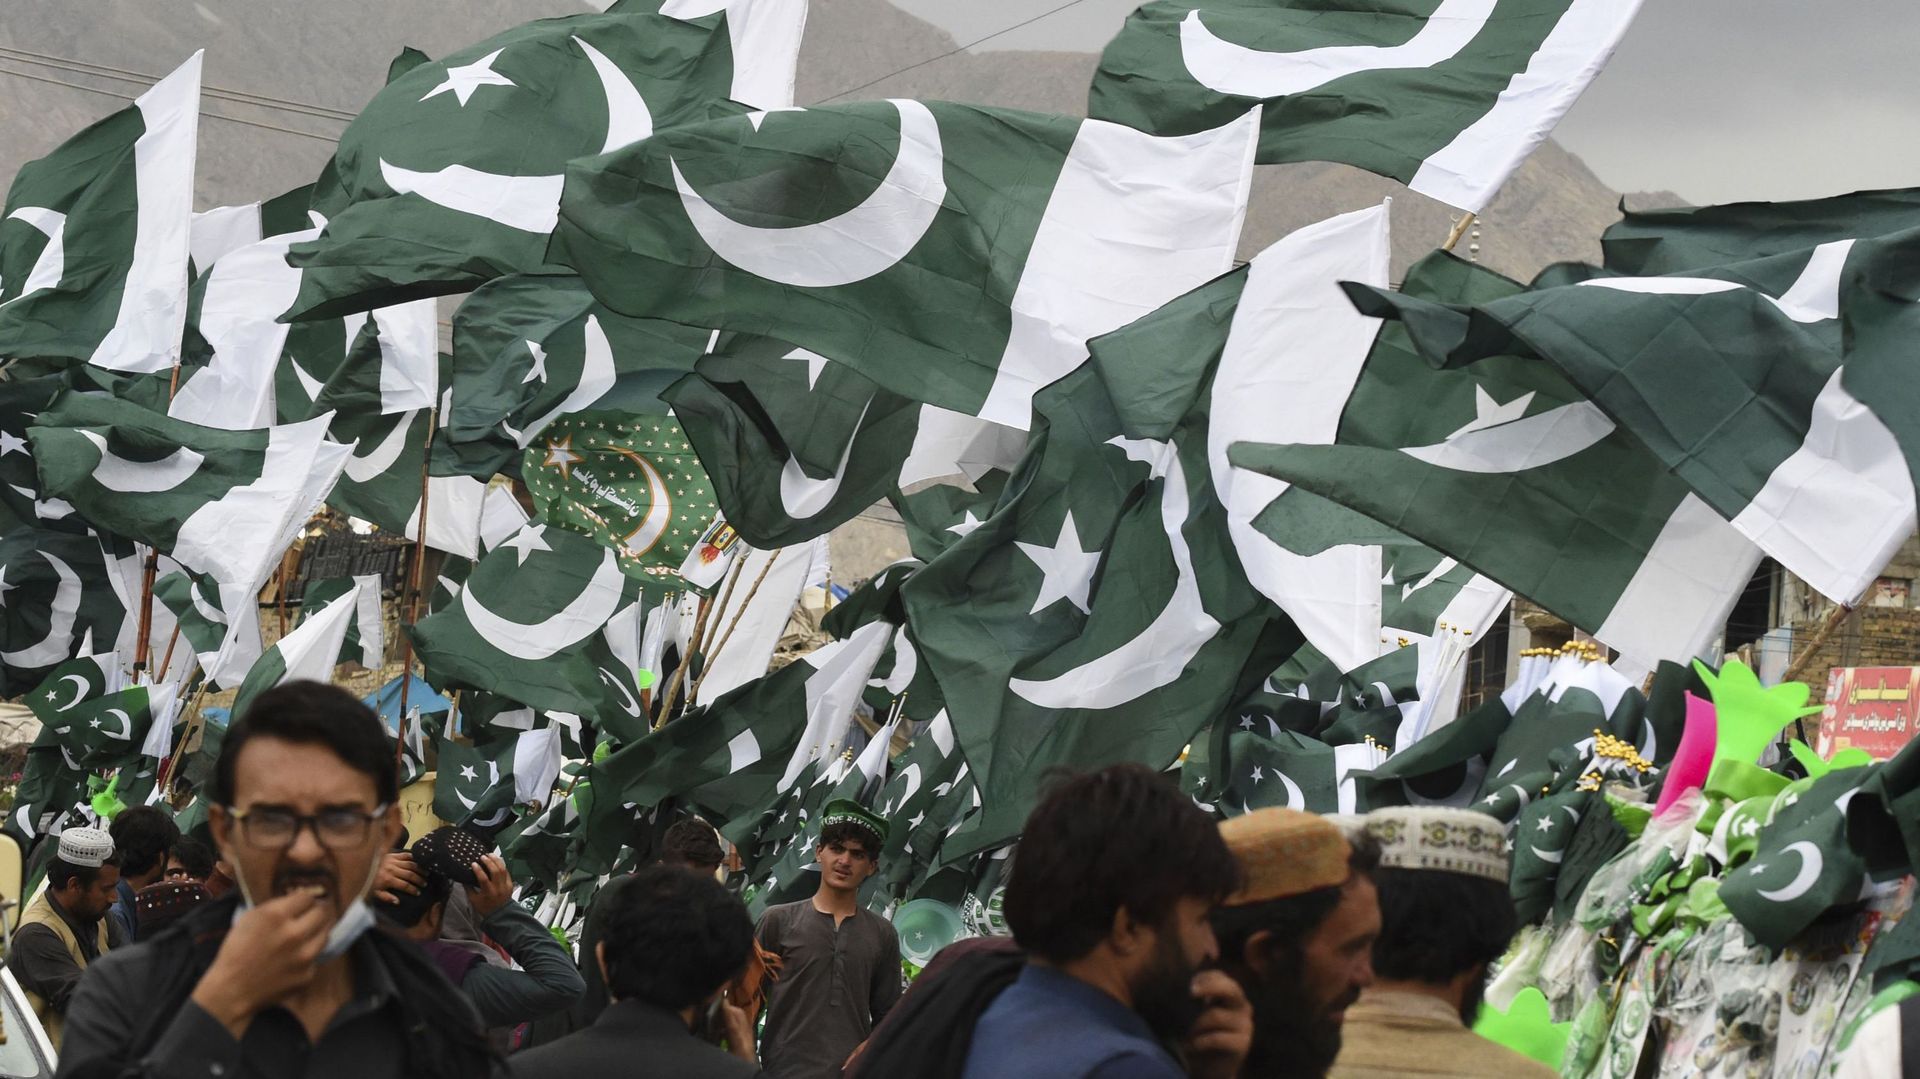 Image capturée à Quetta, au Pakistan, le 09 août 2020